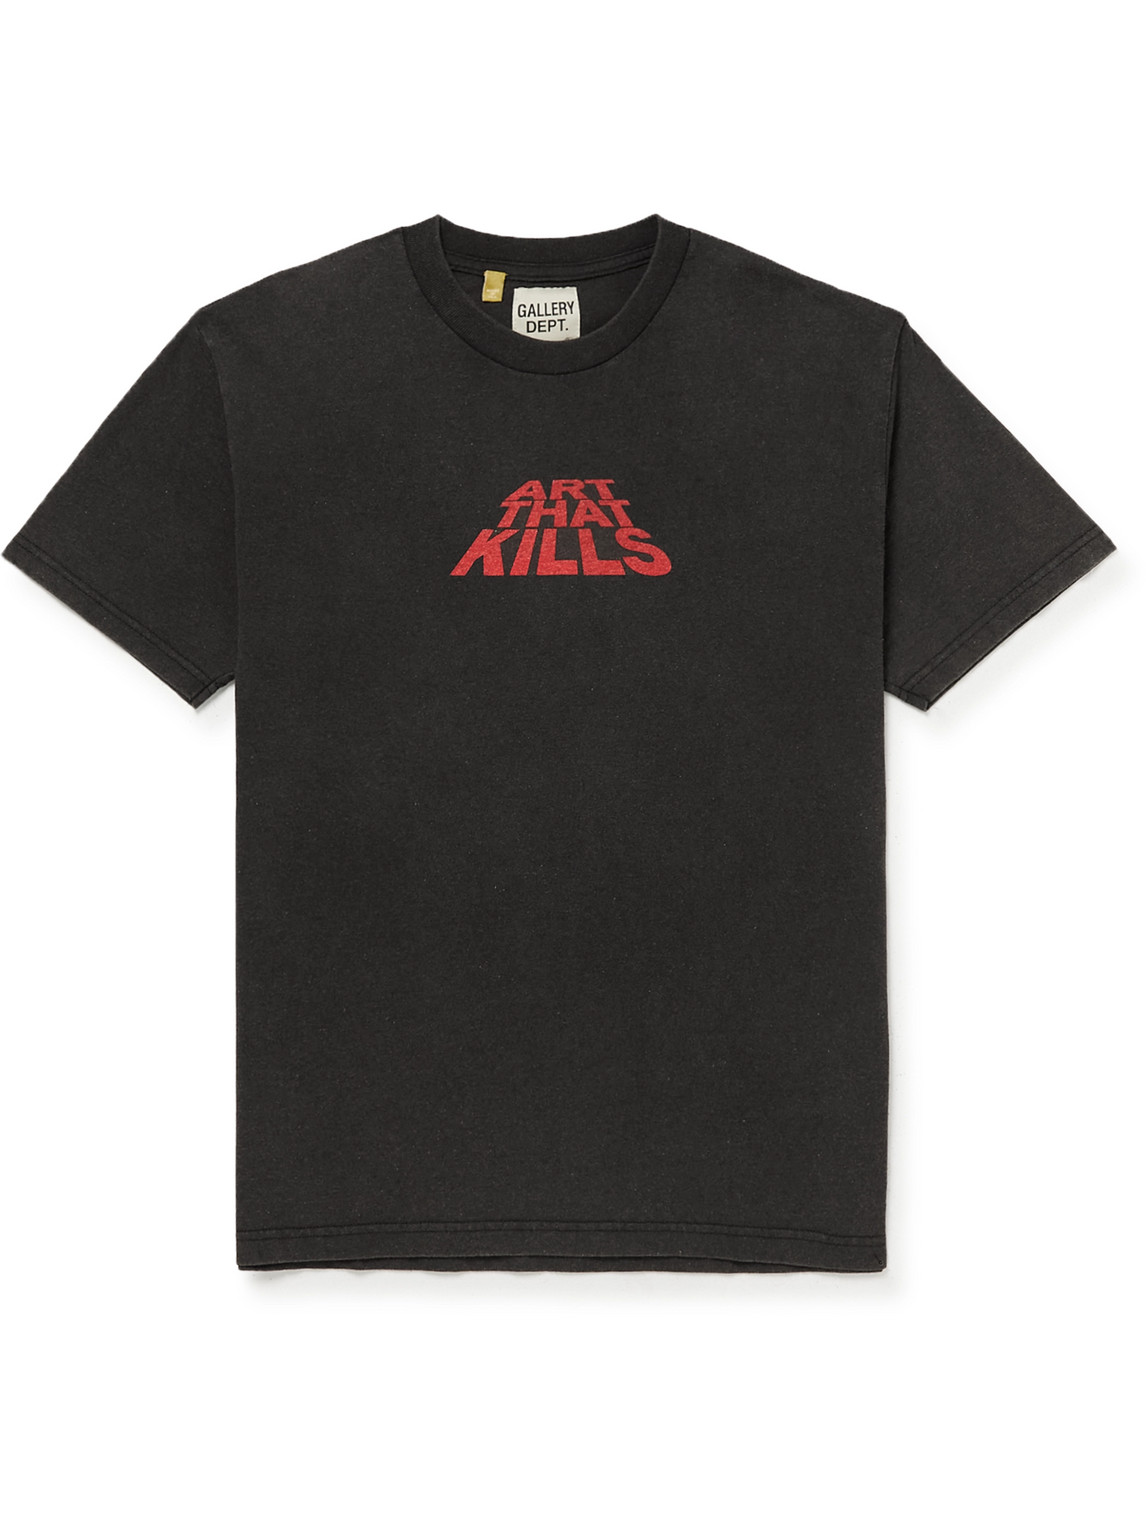 Gallery Dept. - ATK Printed Cotton-Jersey T-Shirt - Men - Black - XL von Gallery Dept.